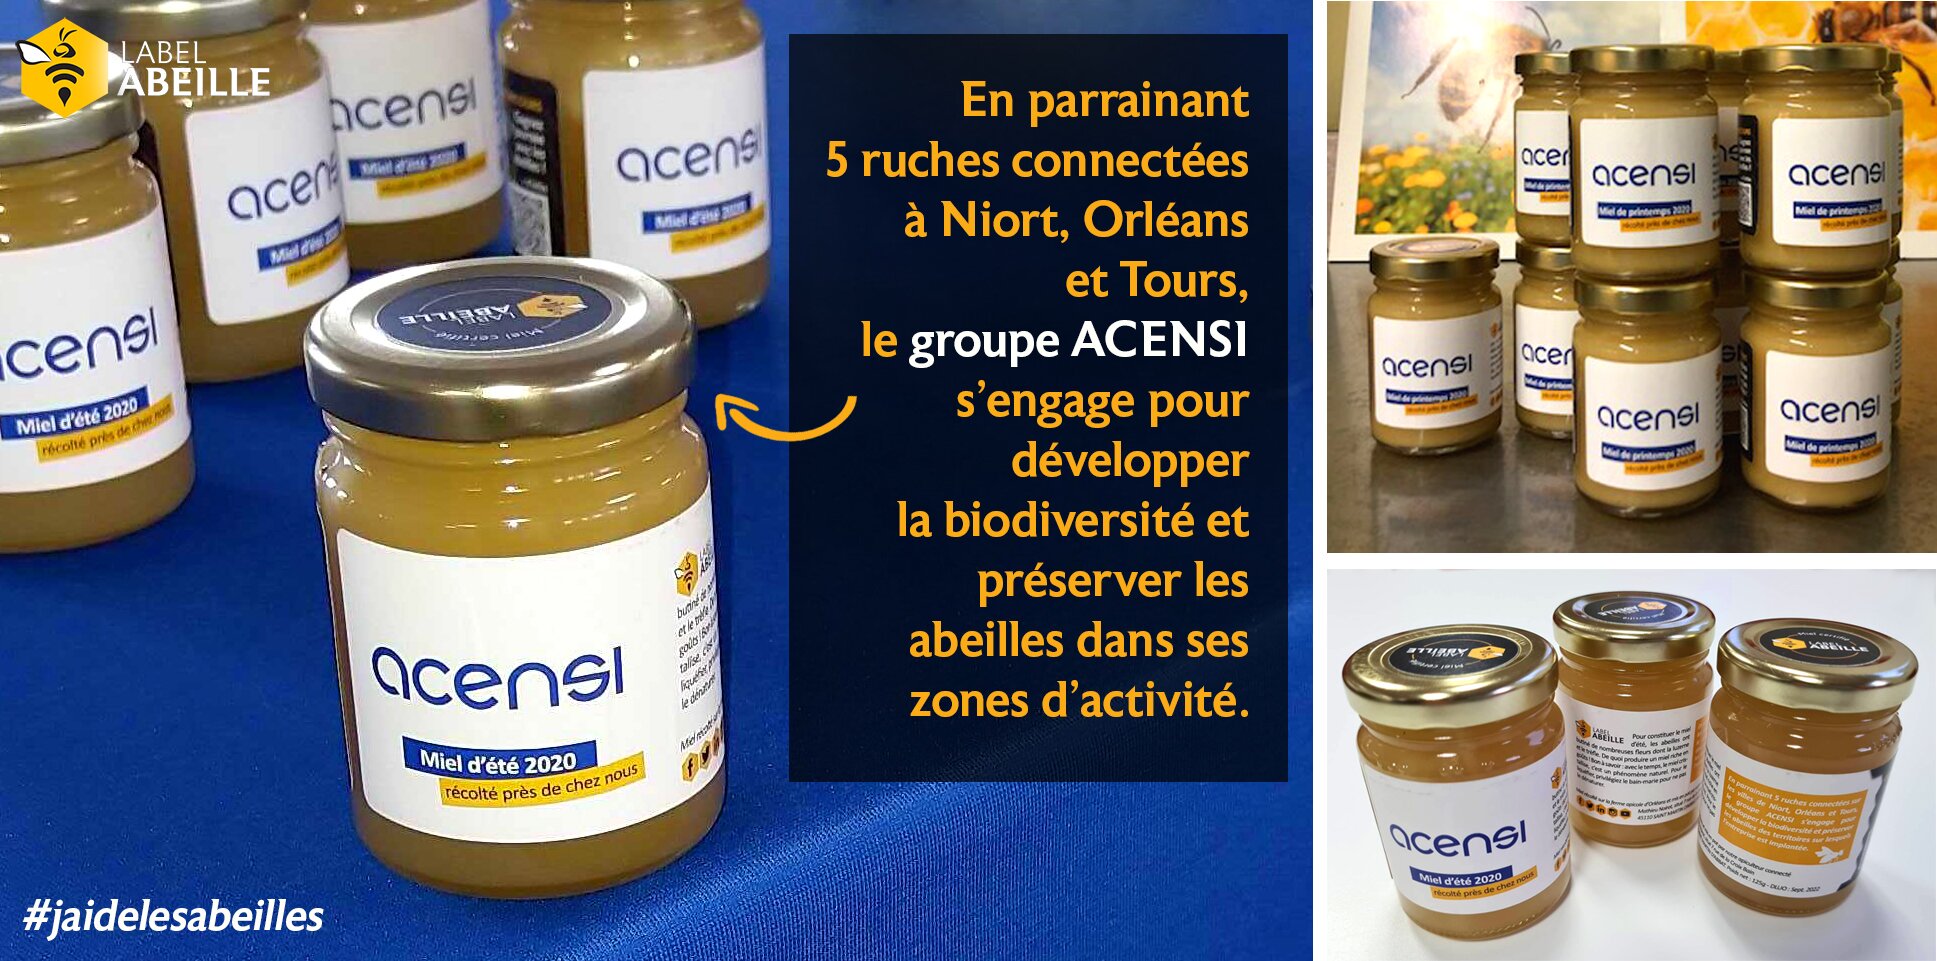 LABEL ABEILLE - pots de miel connecté ACENSI